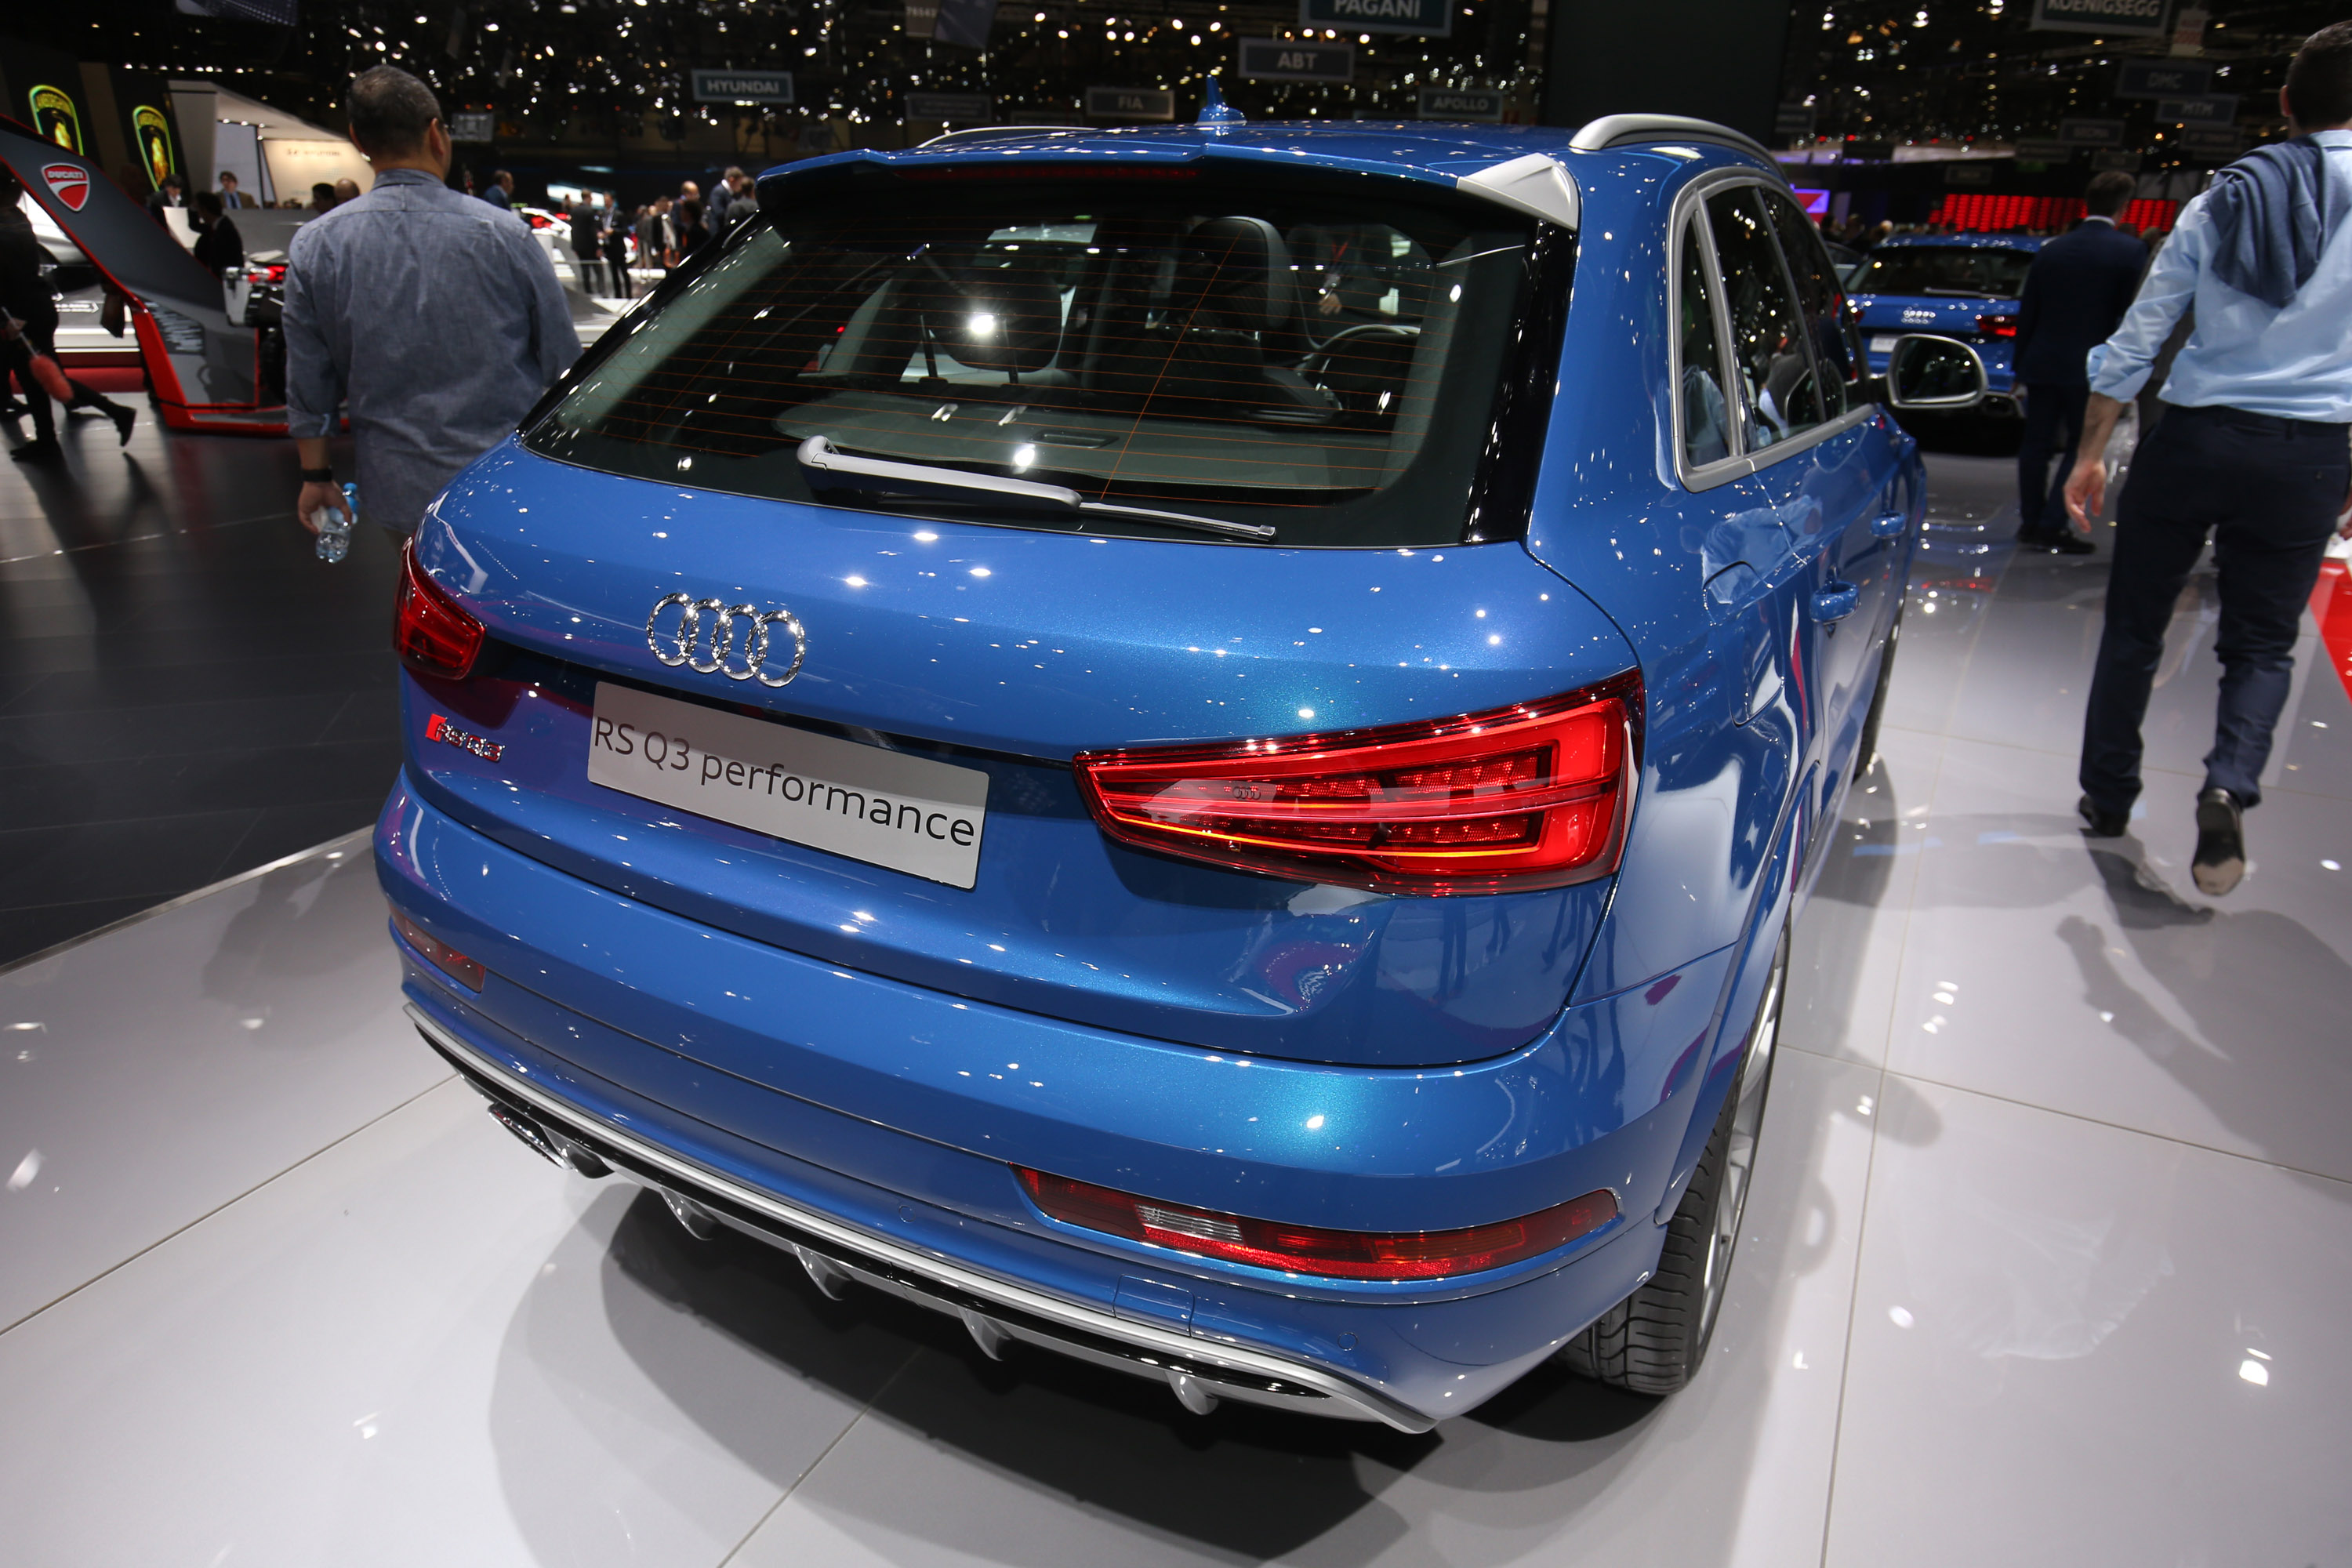 Audi Q3 performance Geneva